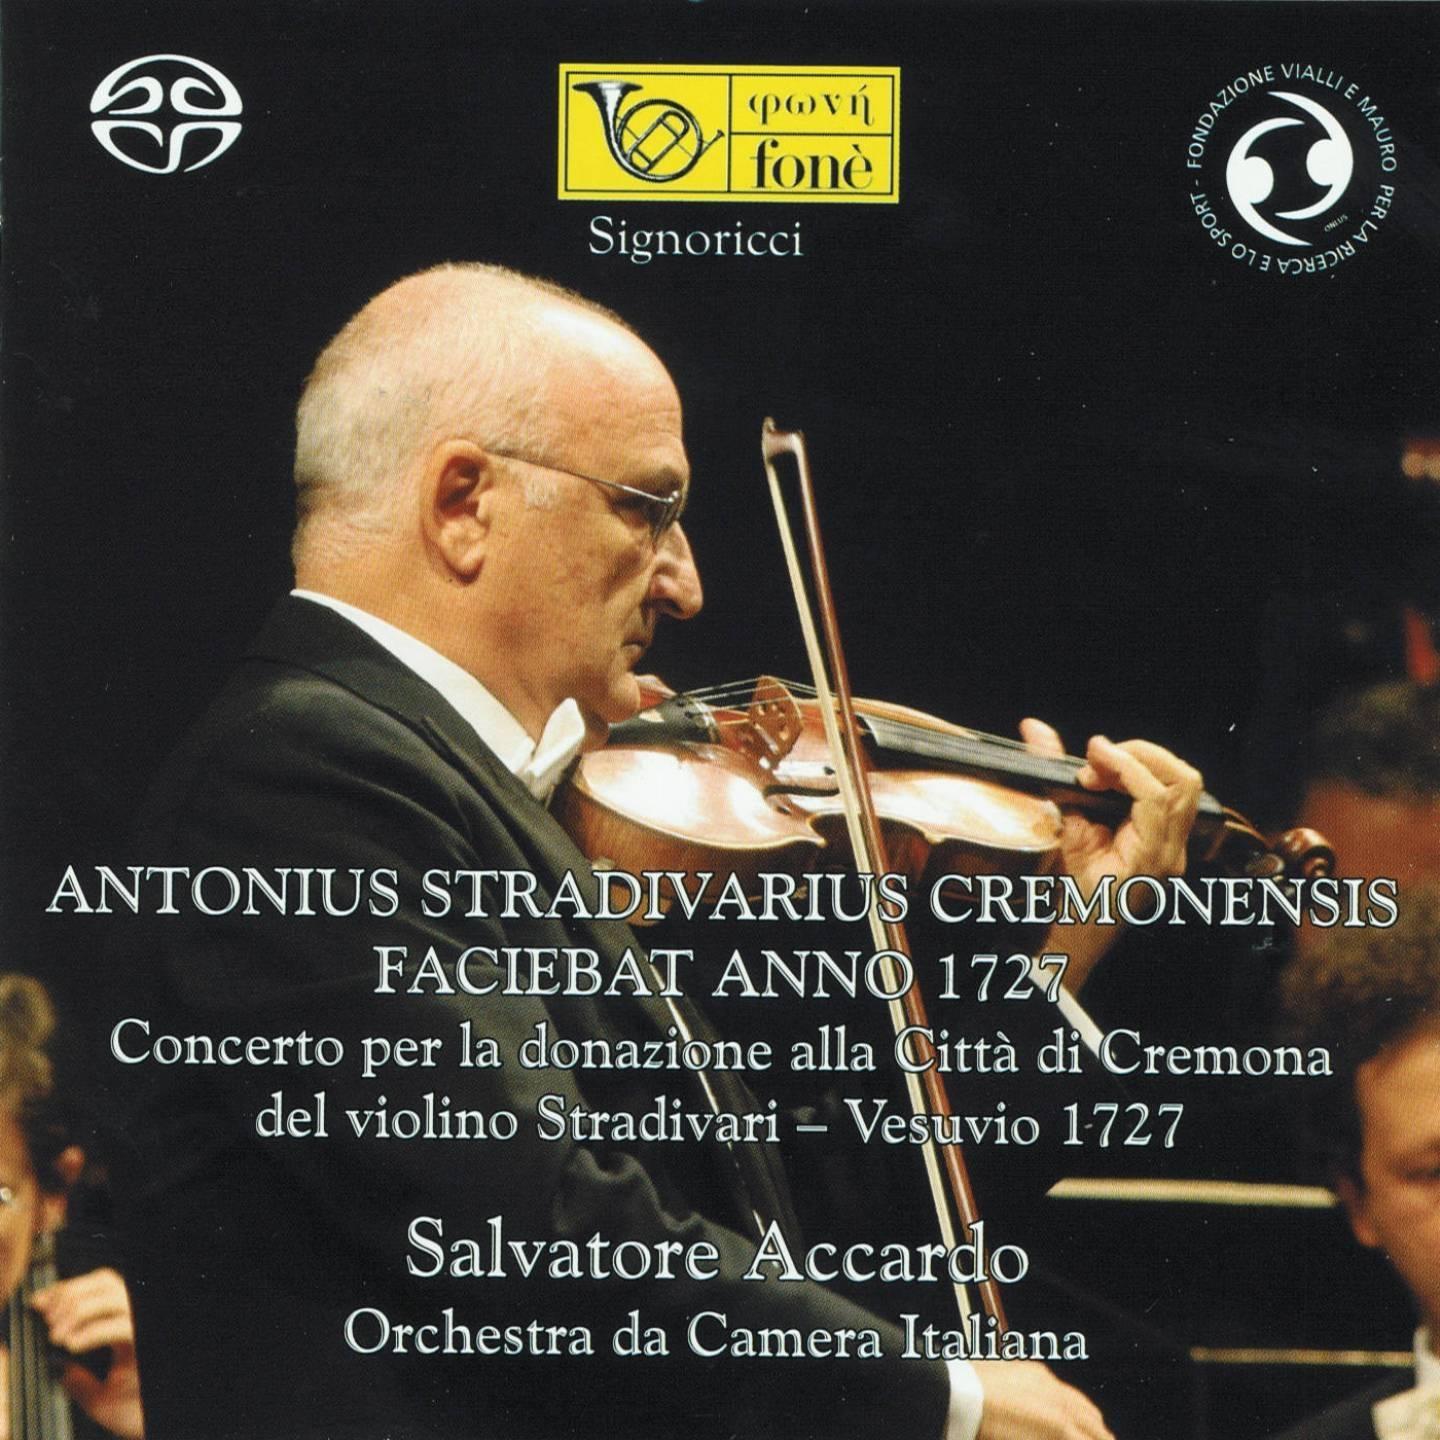 Pietro Antonio Locatelli: Concerto in Re maggiore - Labirinto Armonico, Op. 3, No. 12: 3. Allegro, Capriccio